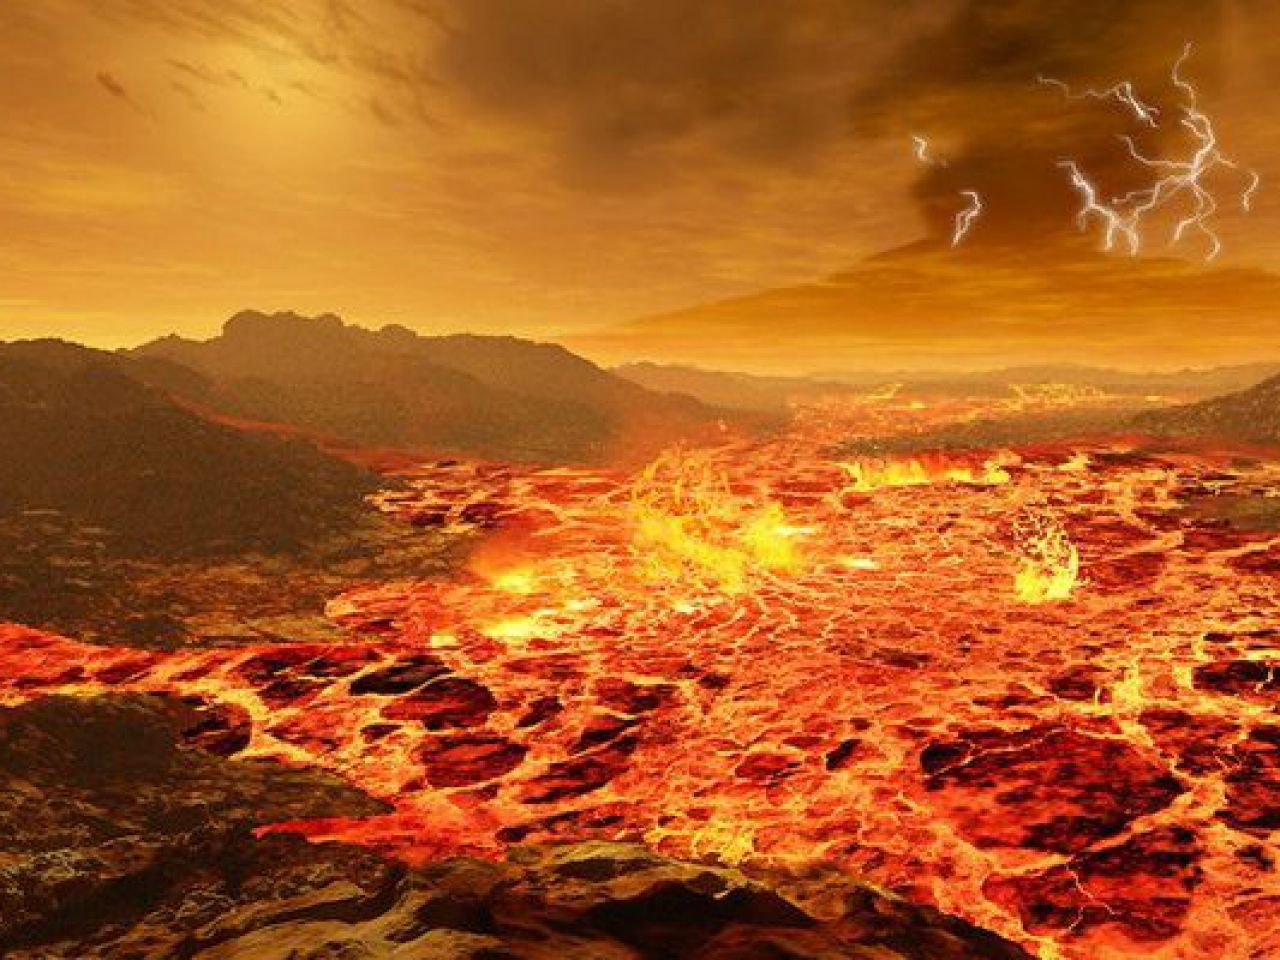 Vênus planeta infernal numerosos vulcões ativos superfície v3 458723 1280x960 1